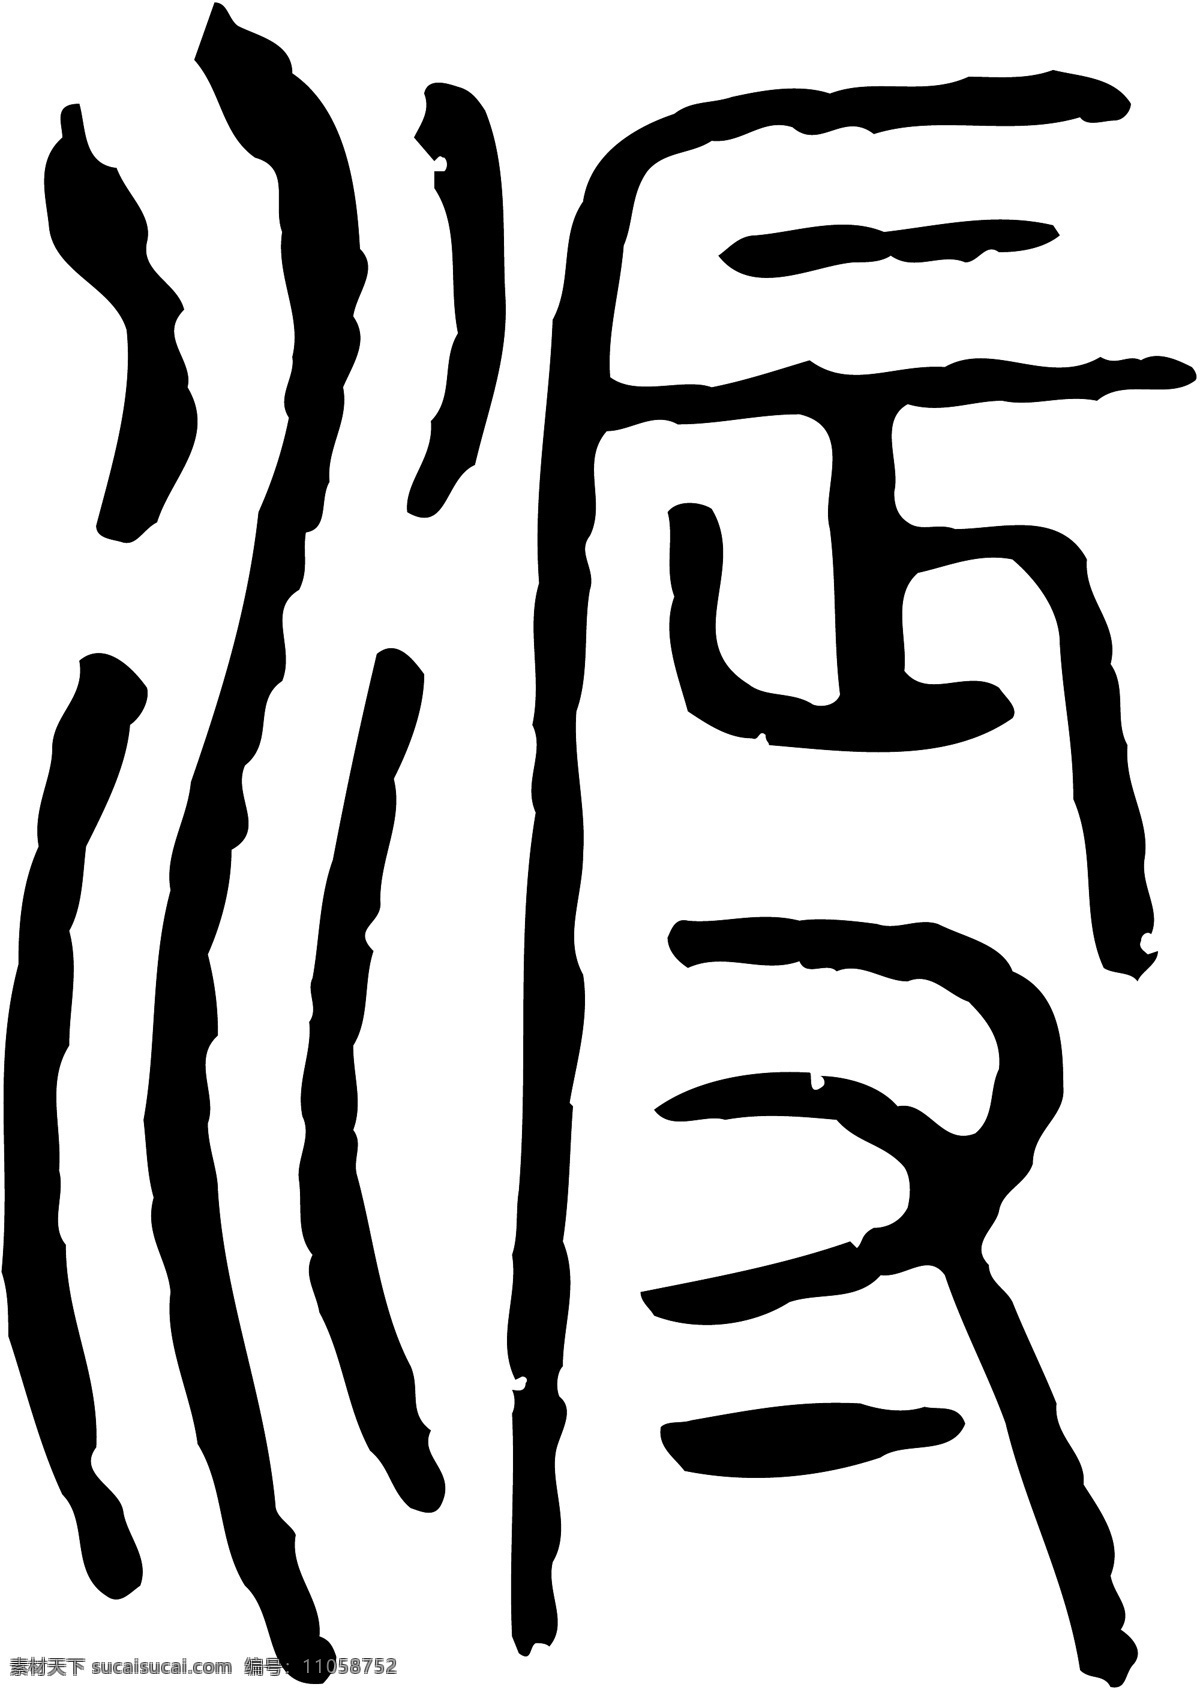 溽 书法 汉字 十三画 传统艺术 矢量 格式 ai格式 设计素材 十三画字 瀚墨宝典 矢量图库 白色